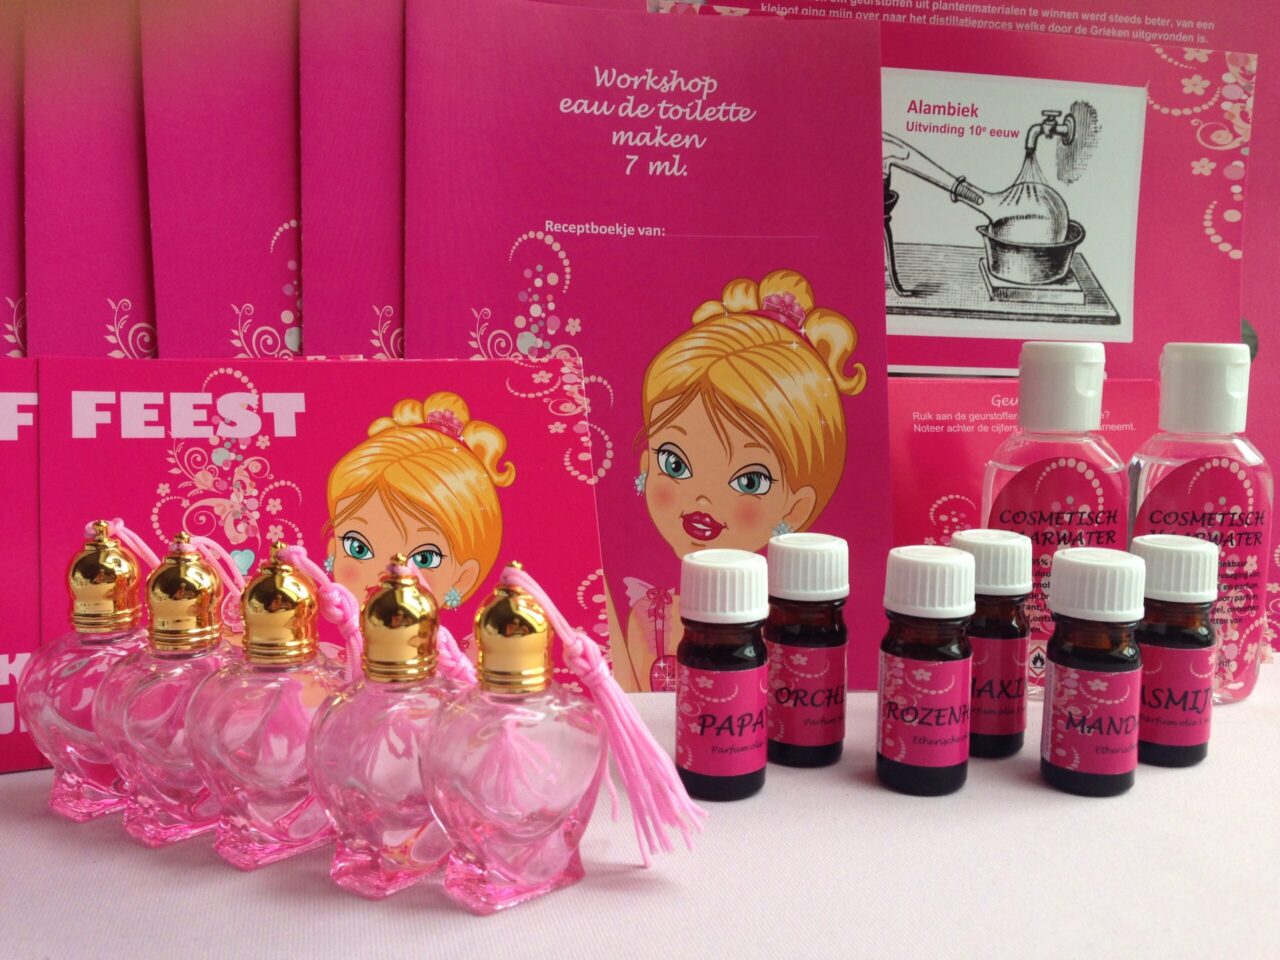 Fantastisch compleet thuisworkshop pakket parfum maken voor 5 kinderen € 39,95 hartjes thema